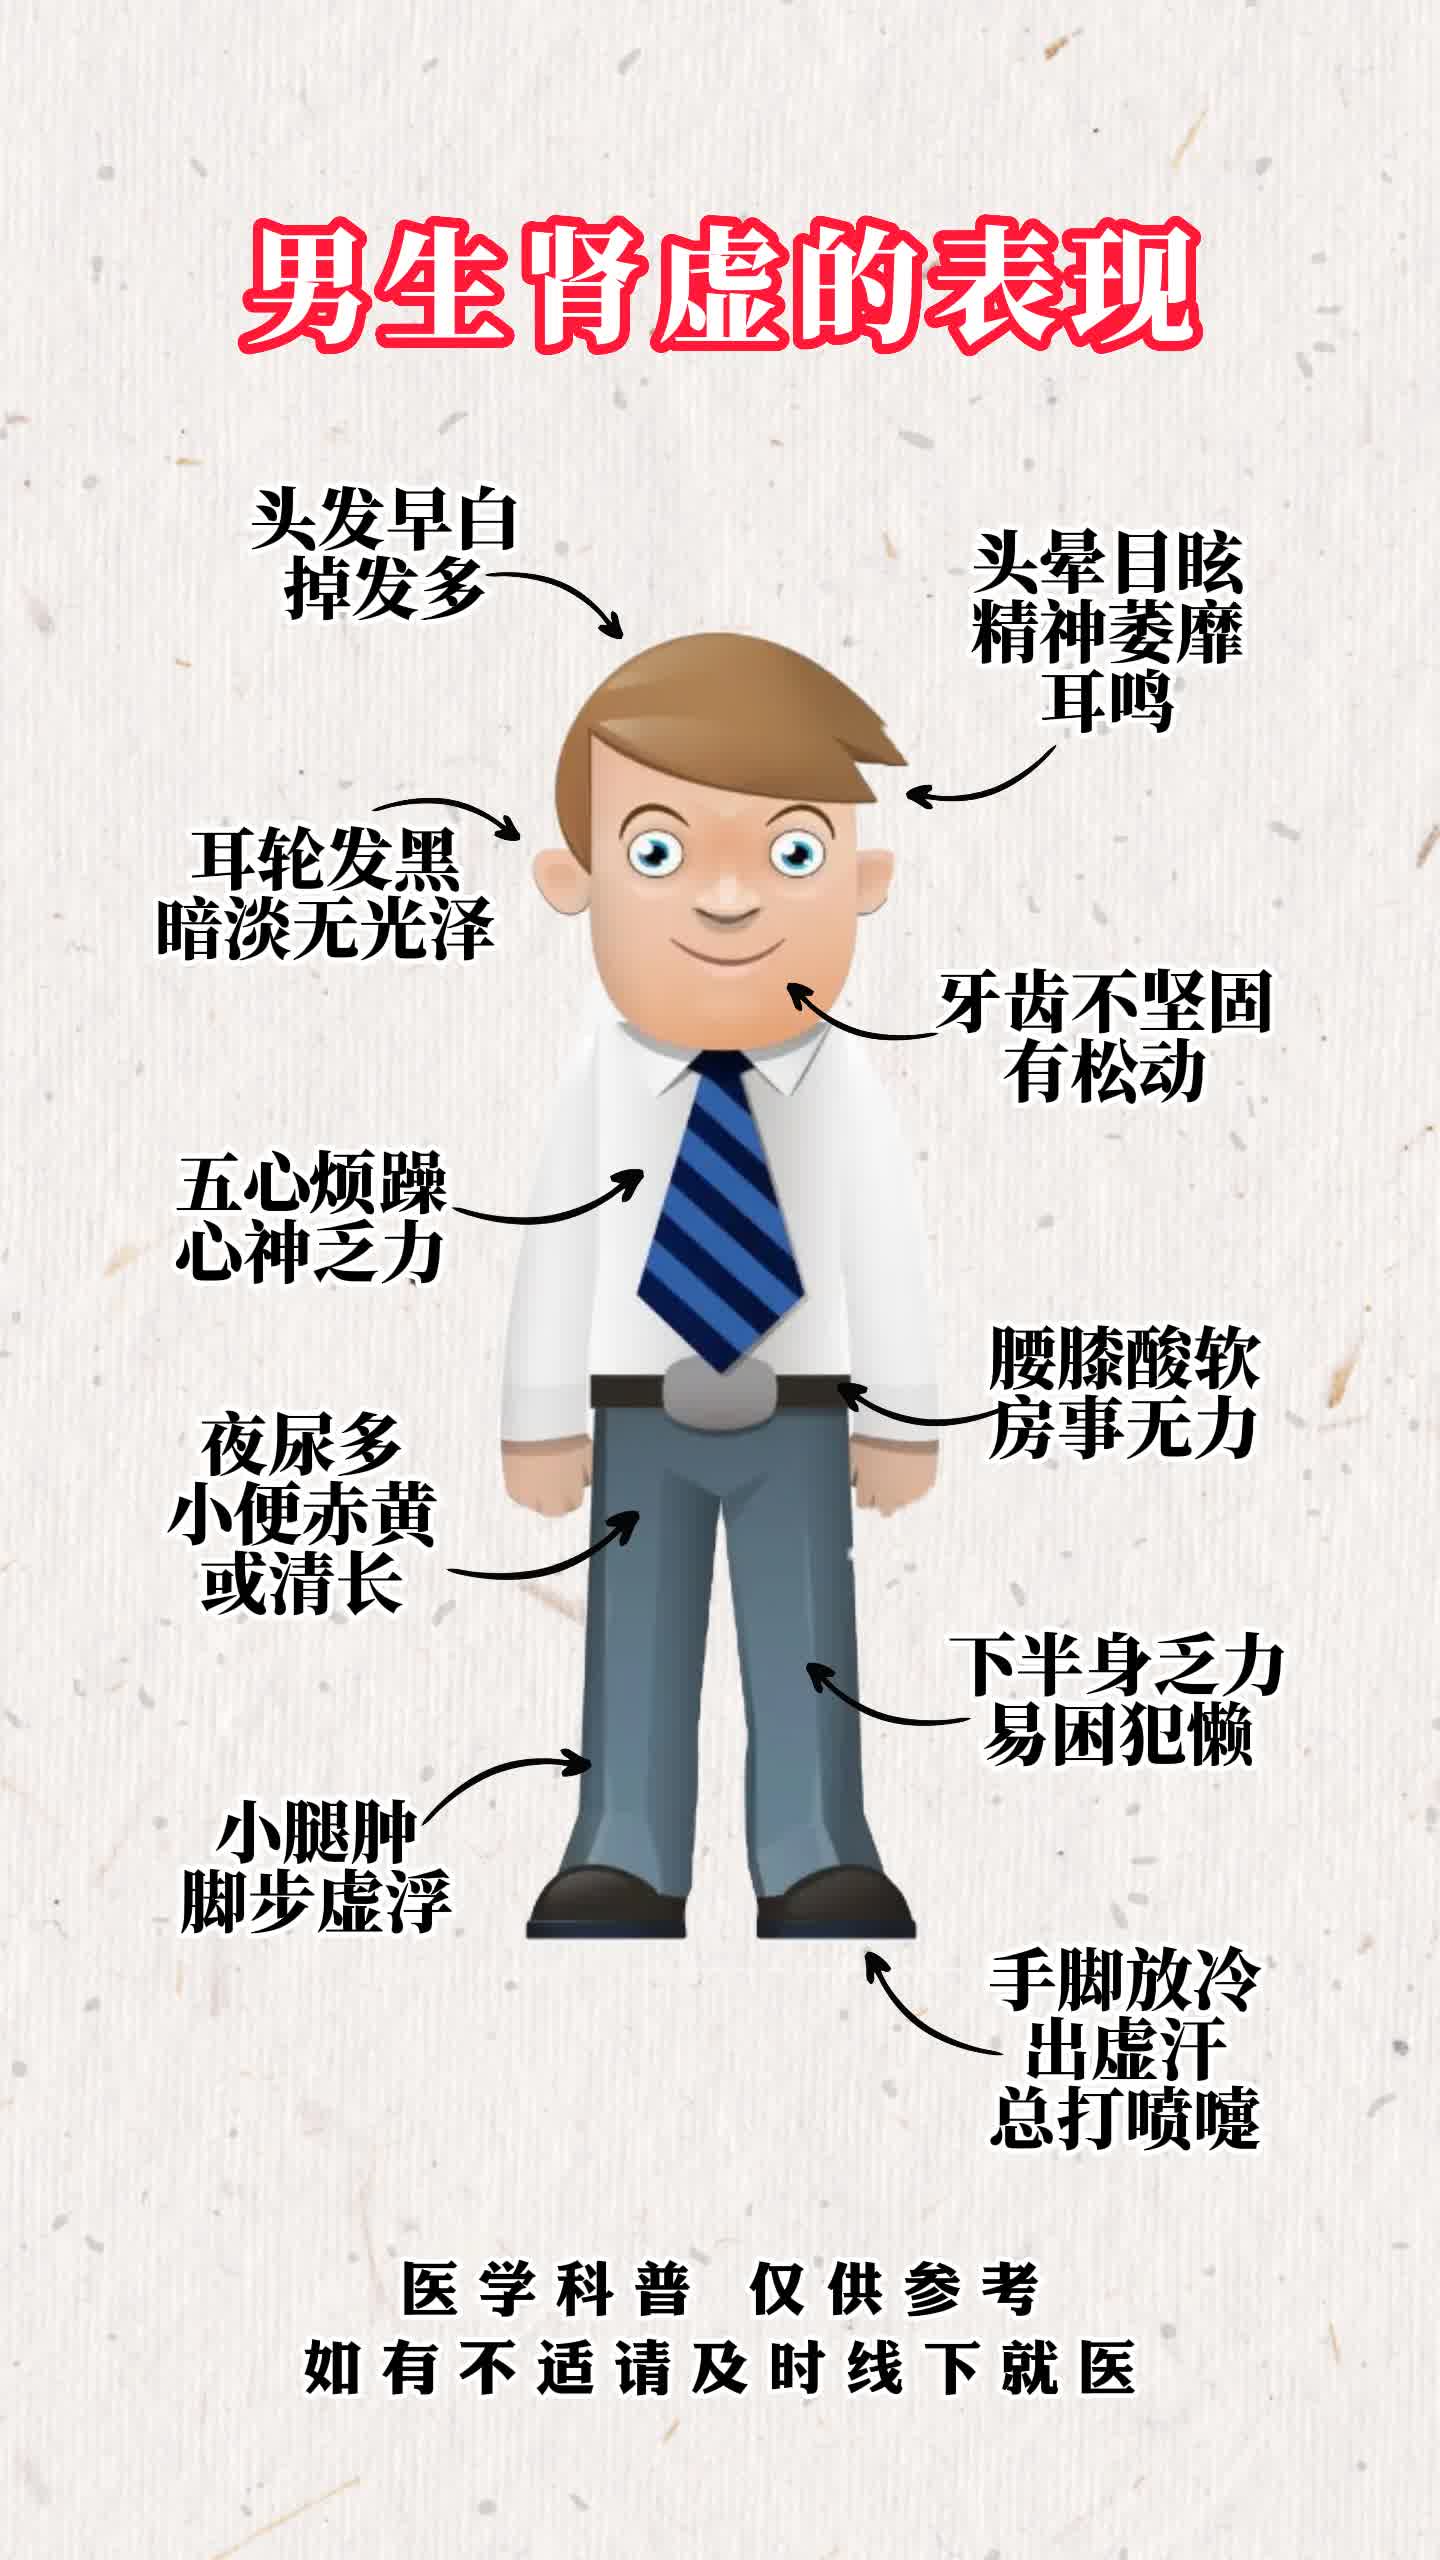 男生肾虚的表现伤肾的八种行为